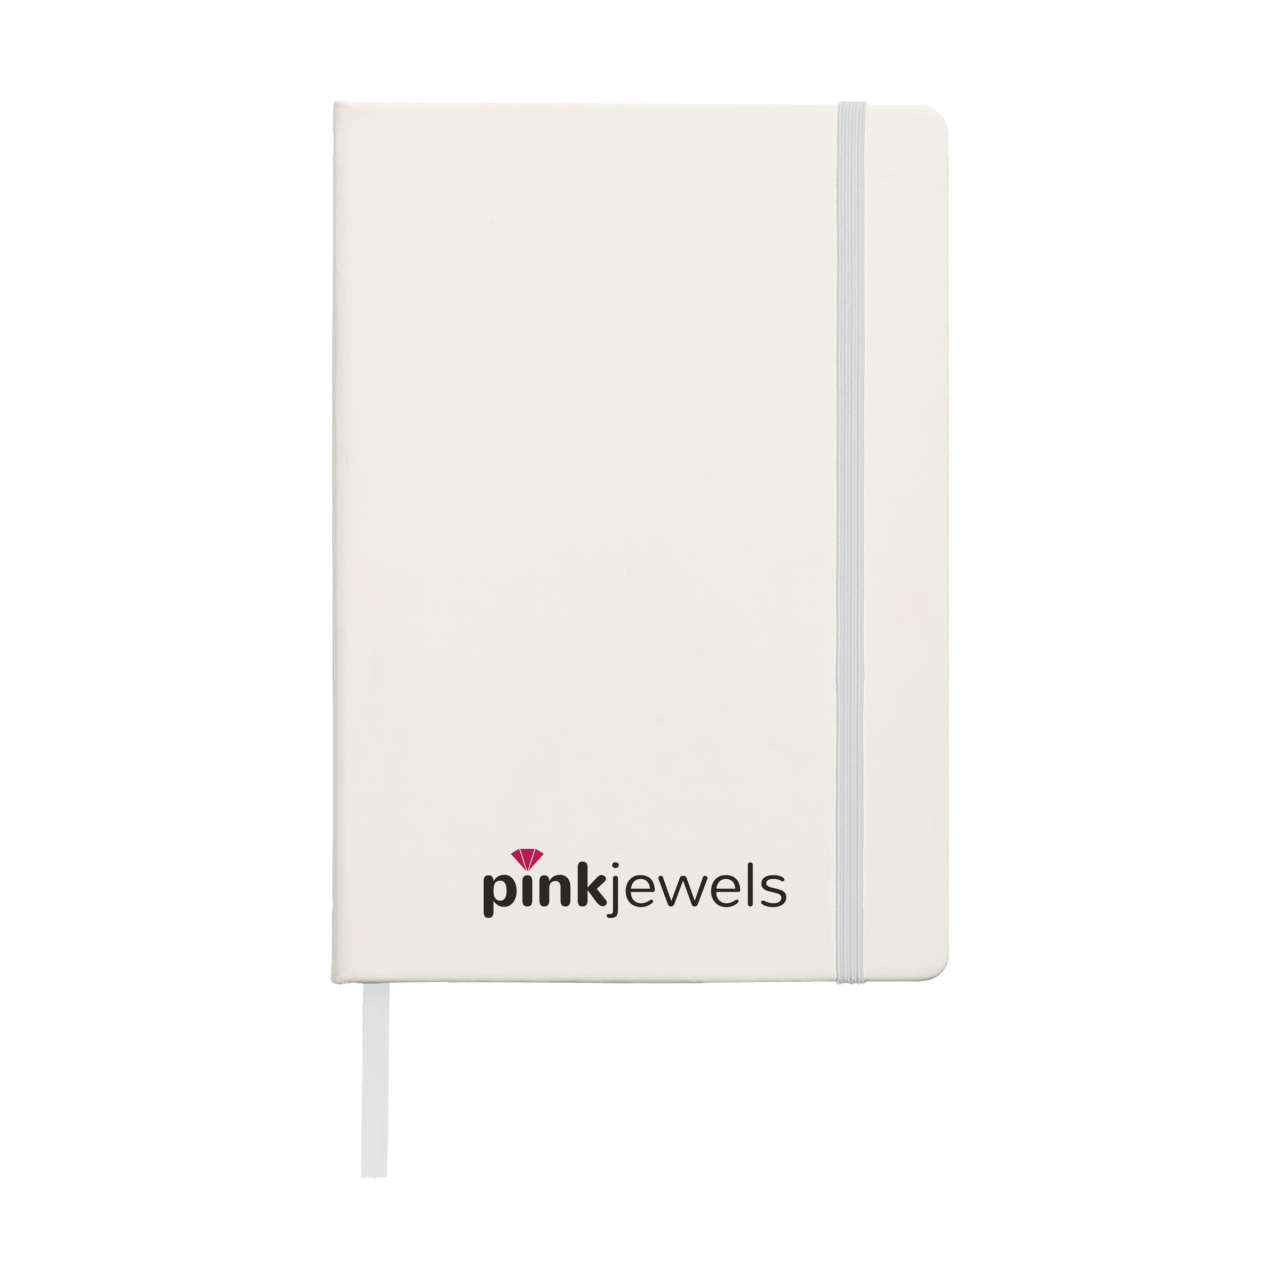 Pocket Notebook A4 Notizbuch